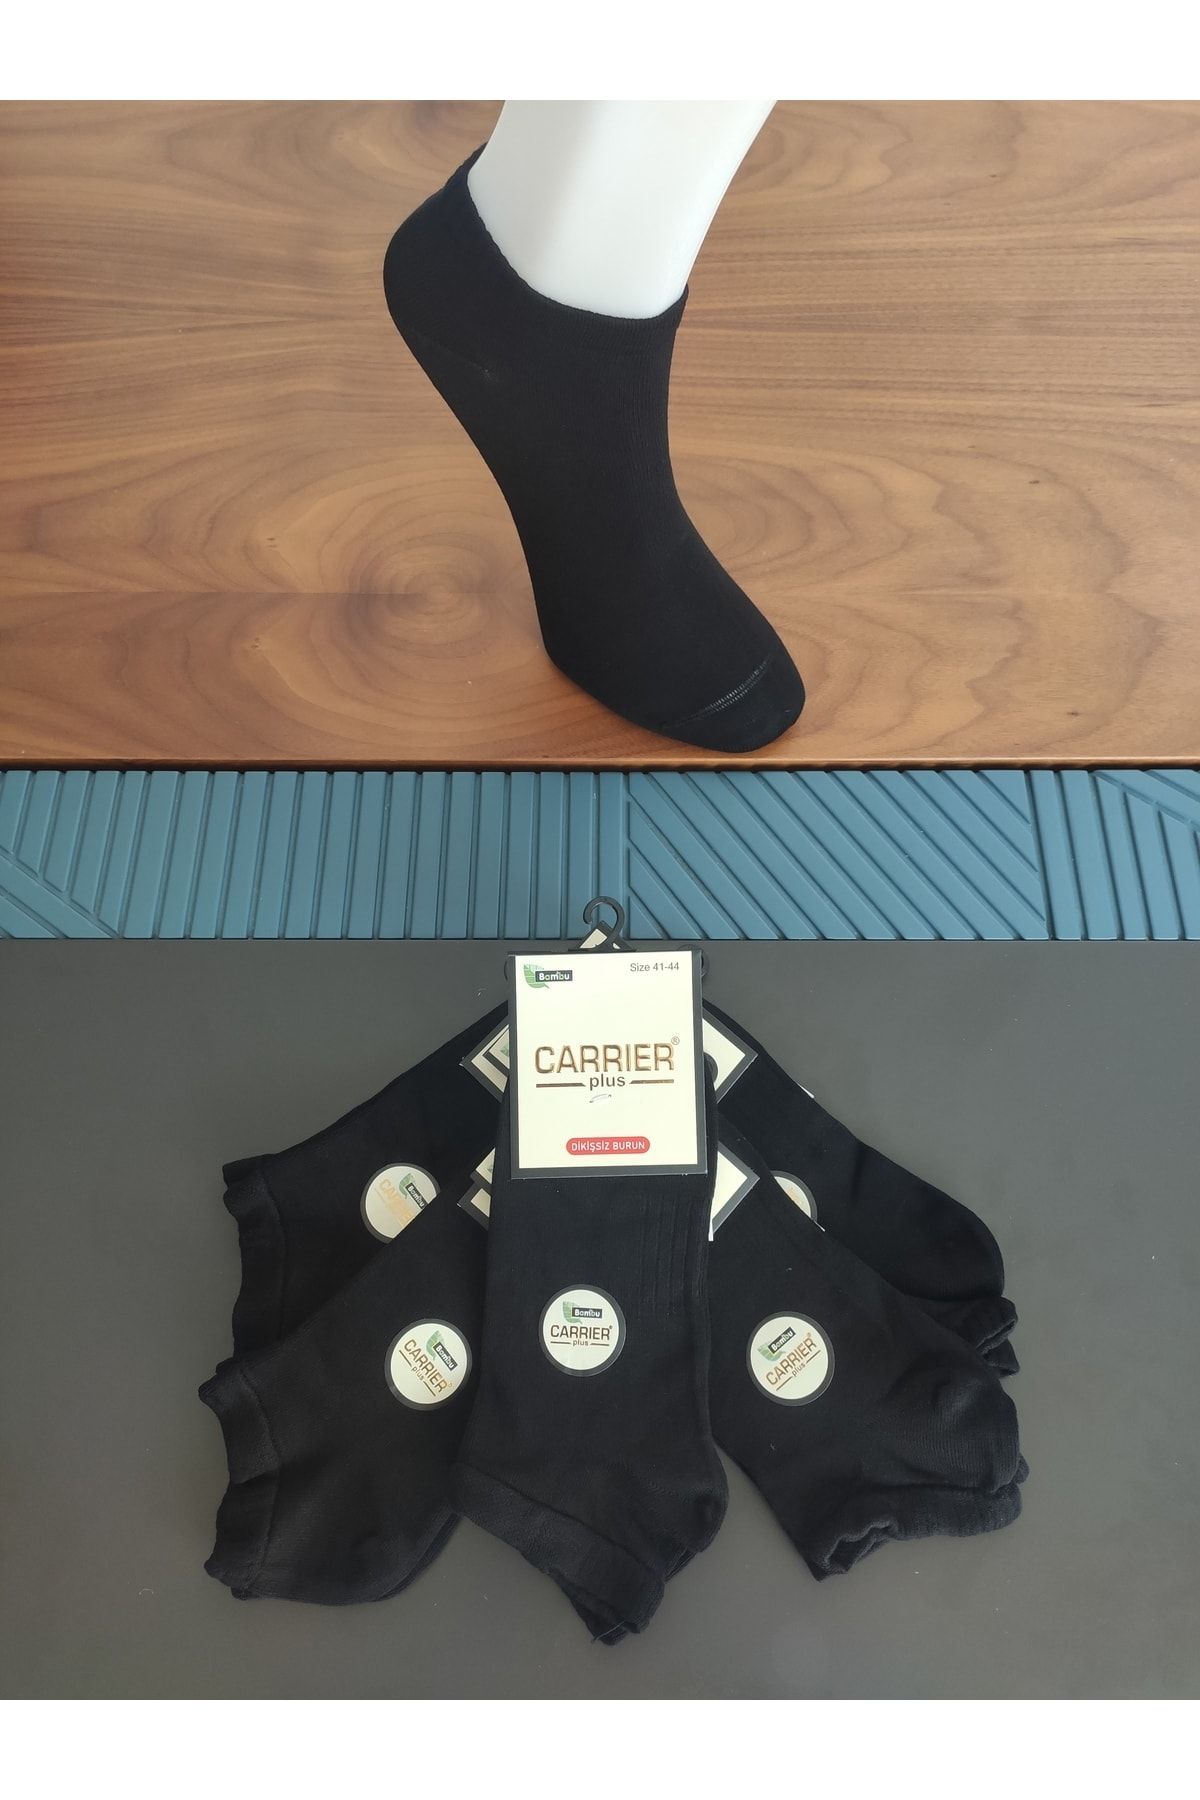 Carrier Plus 5 Çift Bambu Patik Çorap, Siyah Renk, Hava Alan, Burun Dikişsiz, Kokulu, Konforlu Çorap